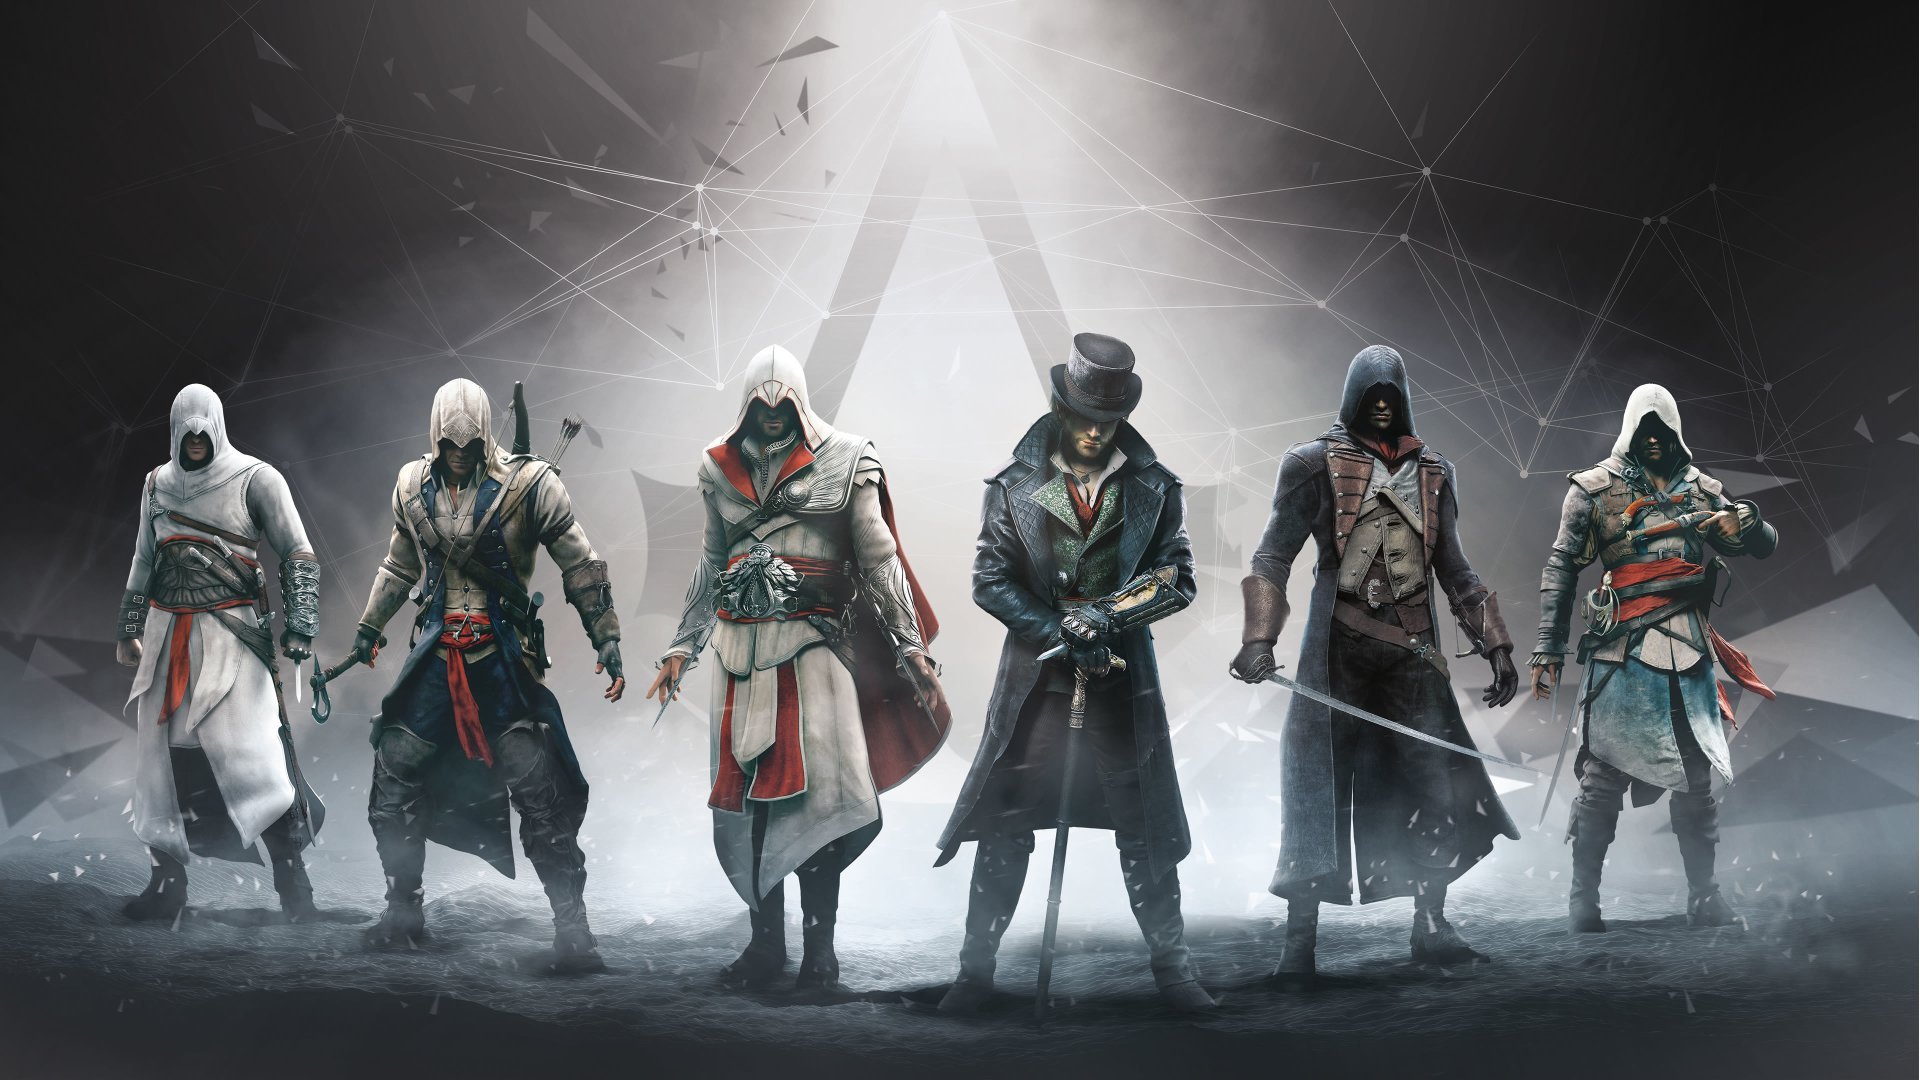 پوستری از بازی Assassin's Creed با حضور تمامی قهرمانان این سری